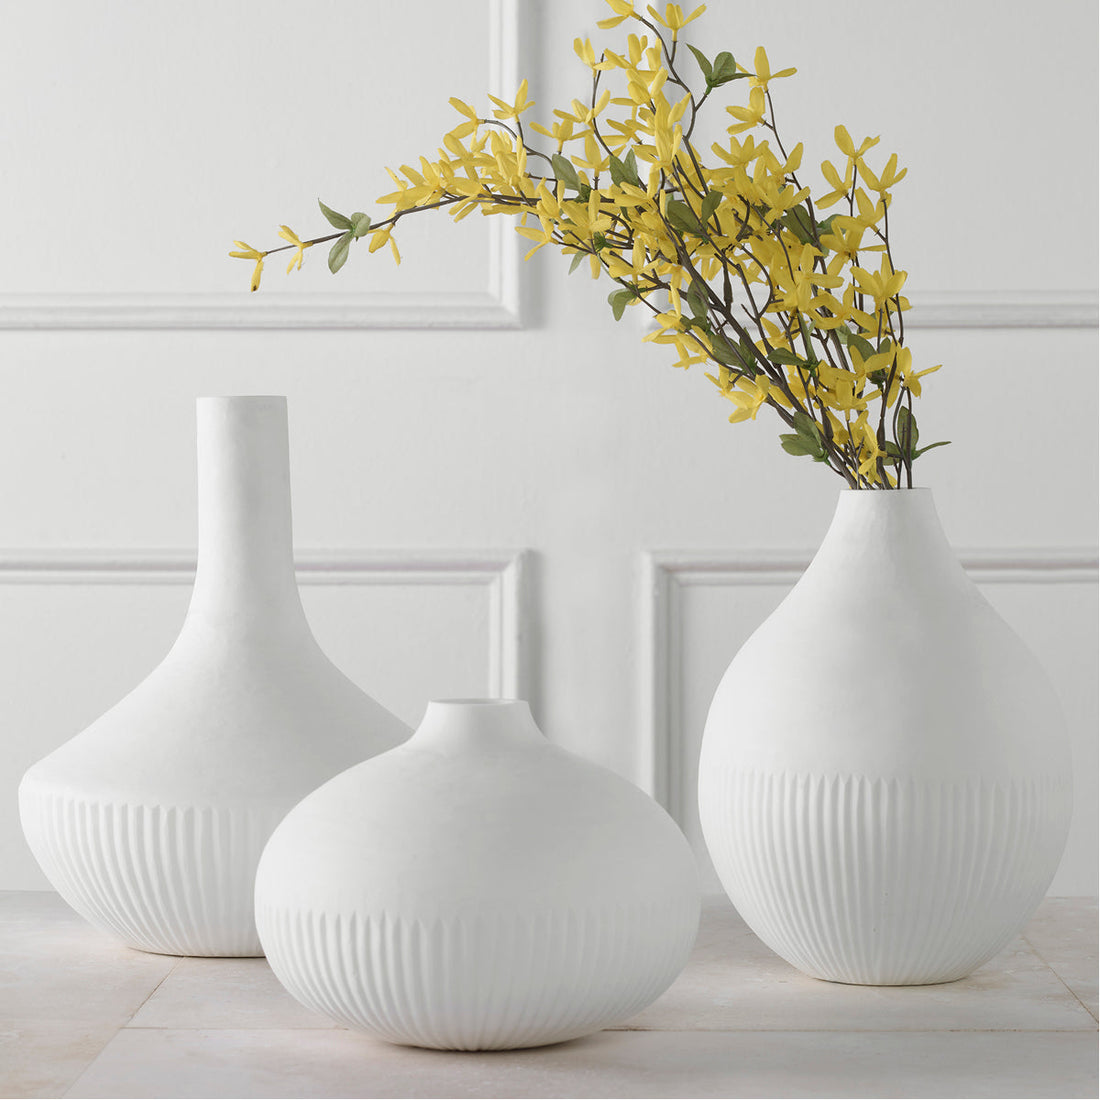 Uttermost Apothecary Satin White Vases, 3-Piece Set